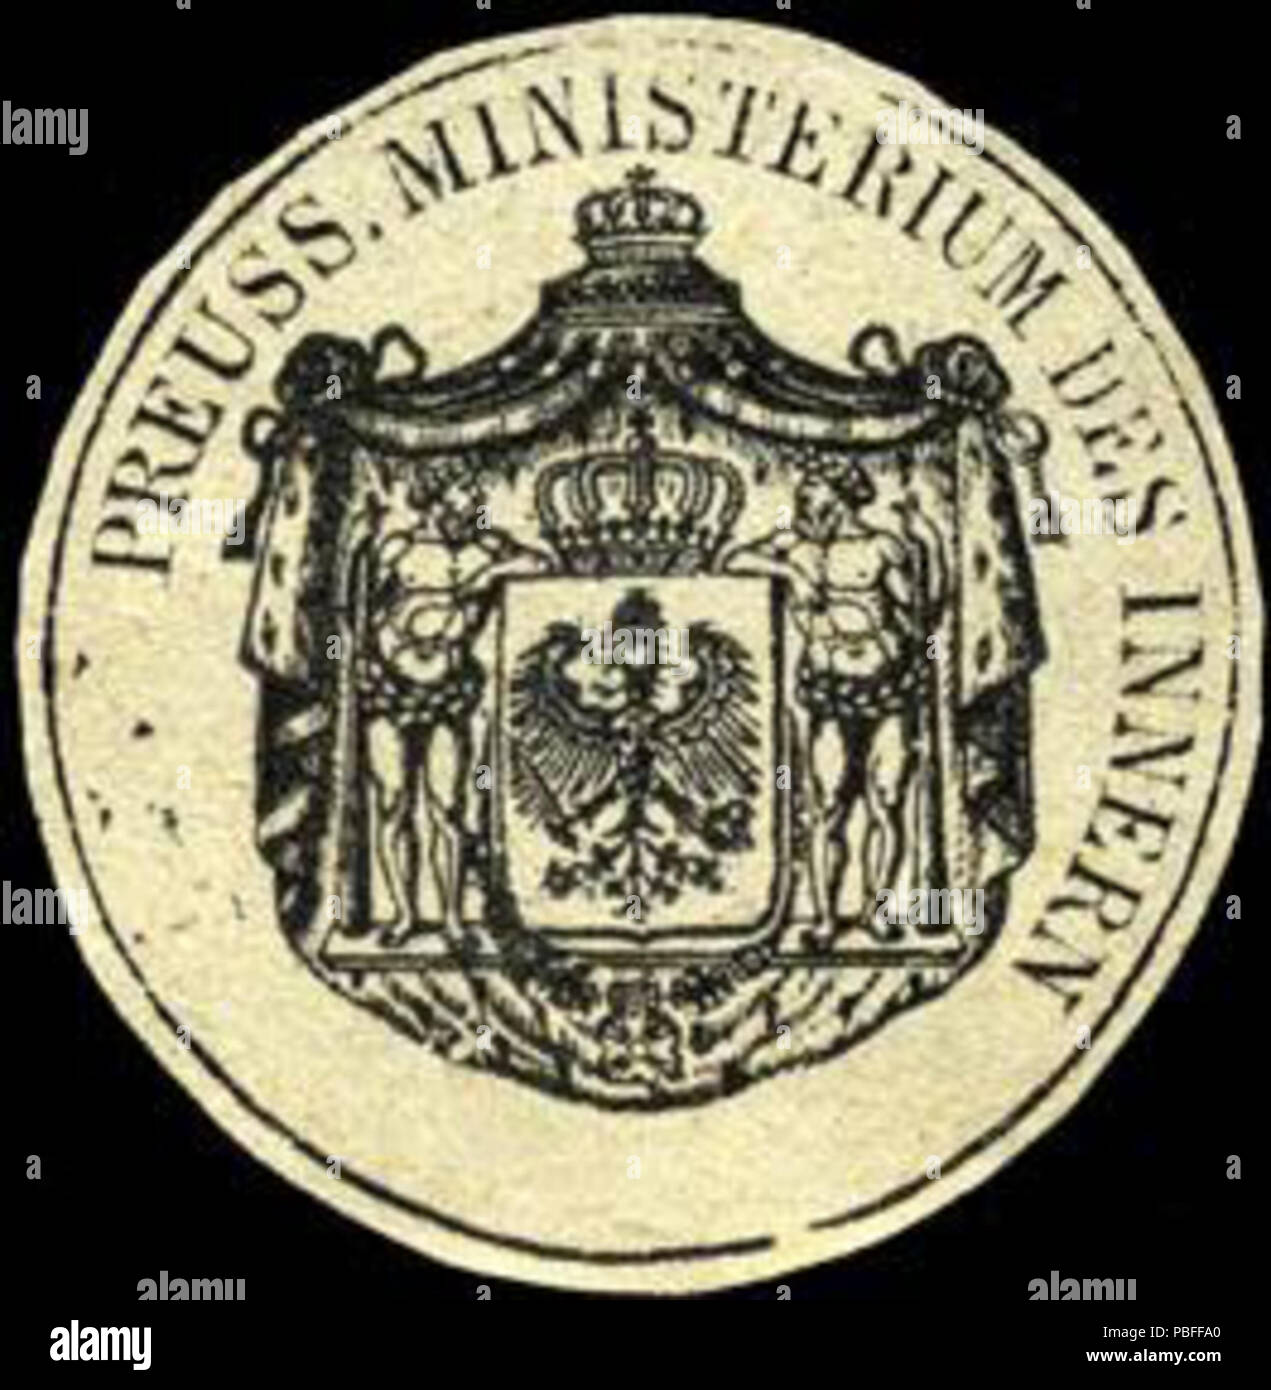 1496 Siegelmarke Preussisches Ministerium des Innern W0221509 Foto Stock